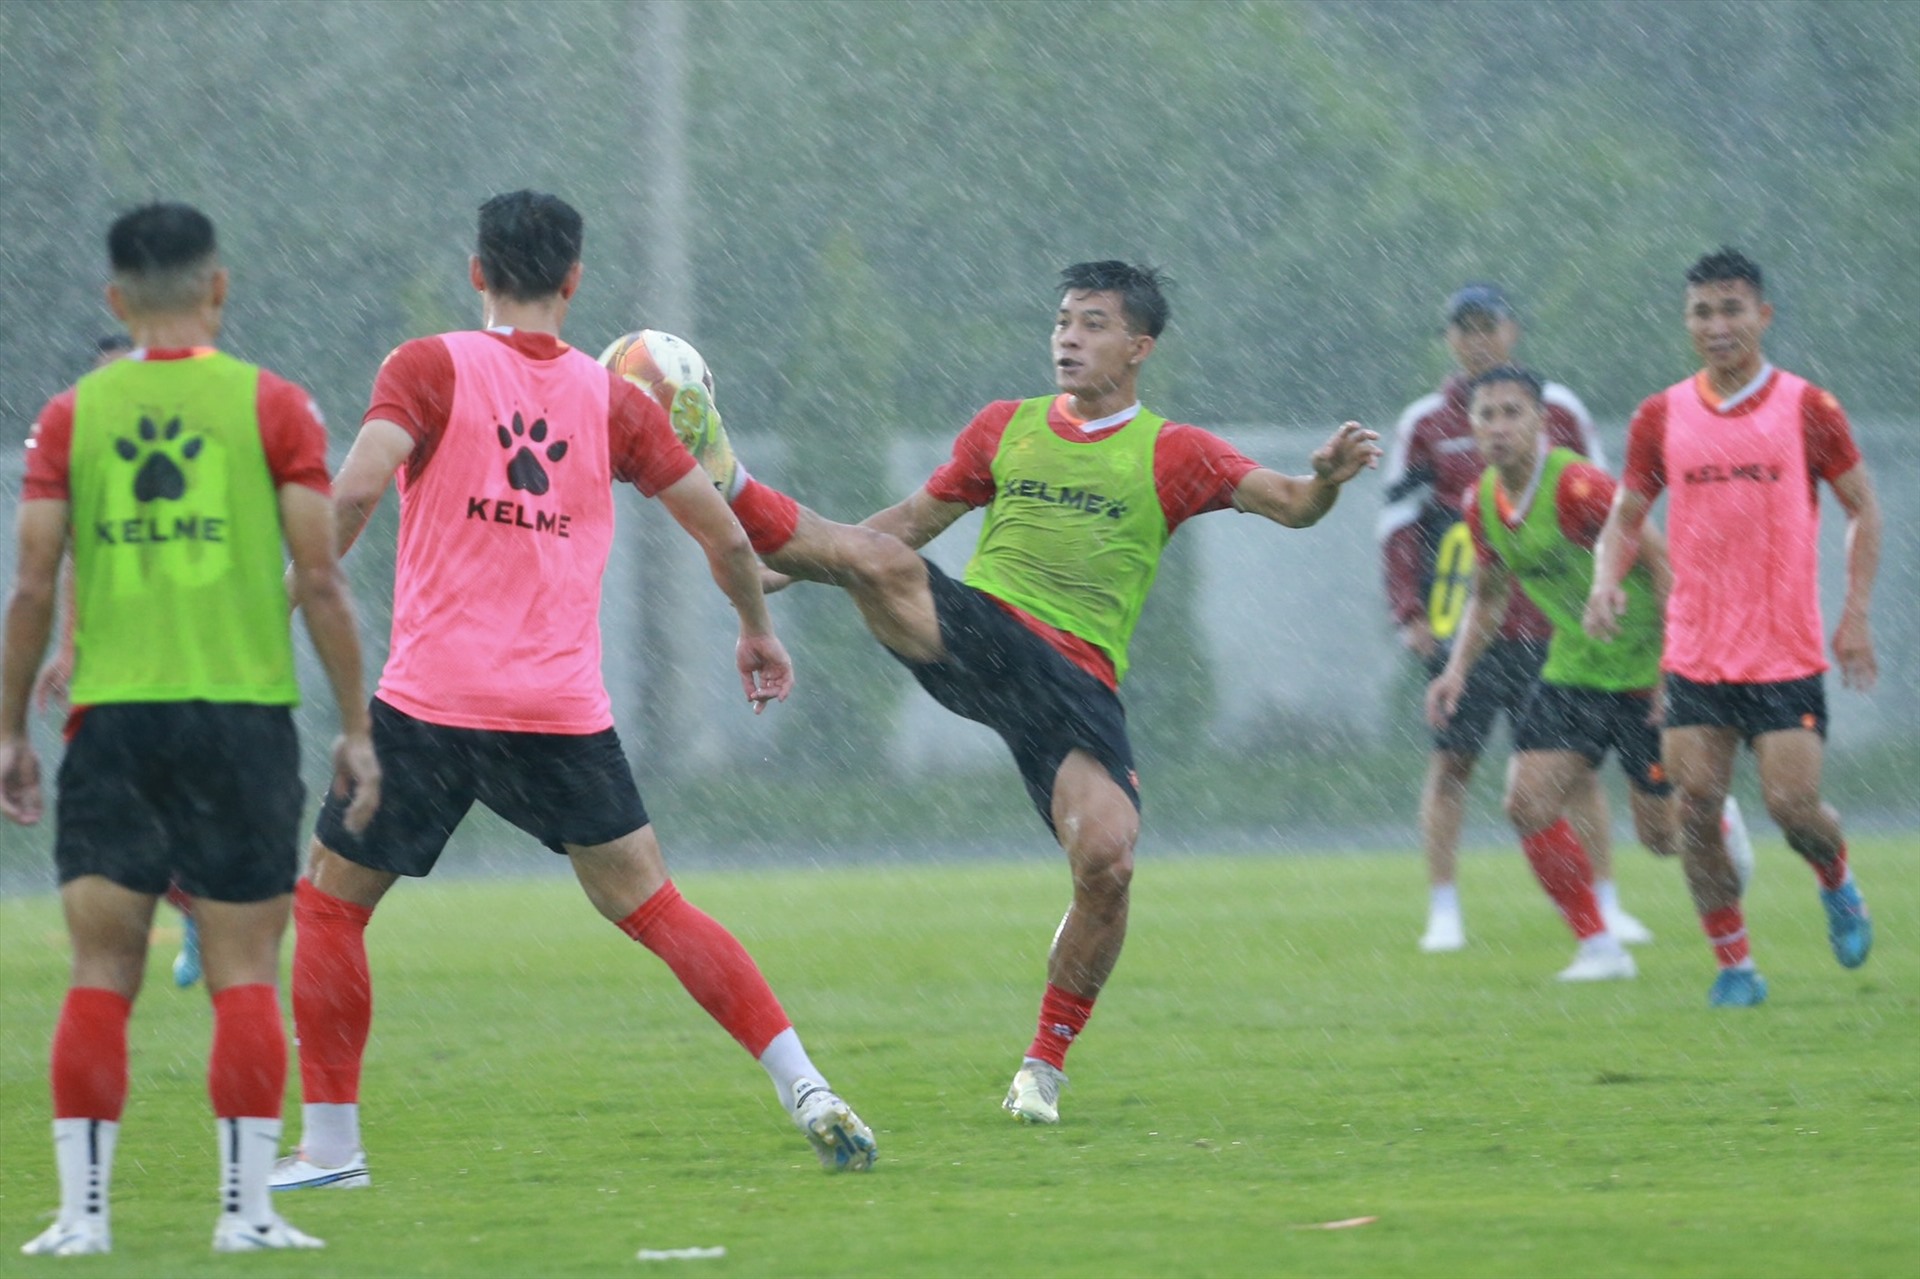 Câu lạc bộ TPHCM kết thúc giai đoạn 1 V.League 2023 với vị trí thứ 13 trên bảng xếp hạng. Đoàn quân của huấn luyện viên Vũ Tiến Thành giành được 8 điểm và đang phải cạnh tranh quyết liệt suất trụ hạng cùng câu lạc bộ Bình Dương (7 điểm) và Đà Nẵng (10 điểm).  